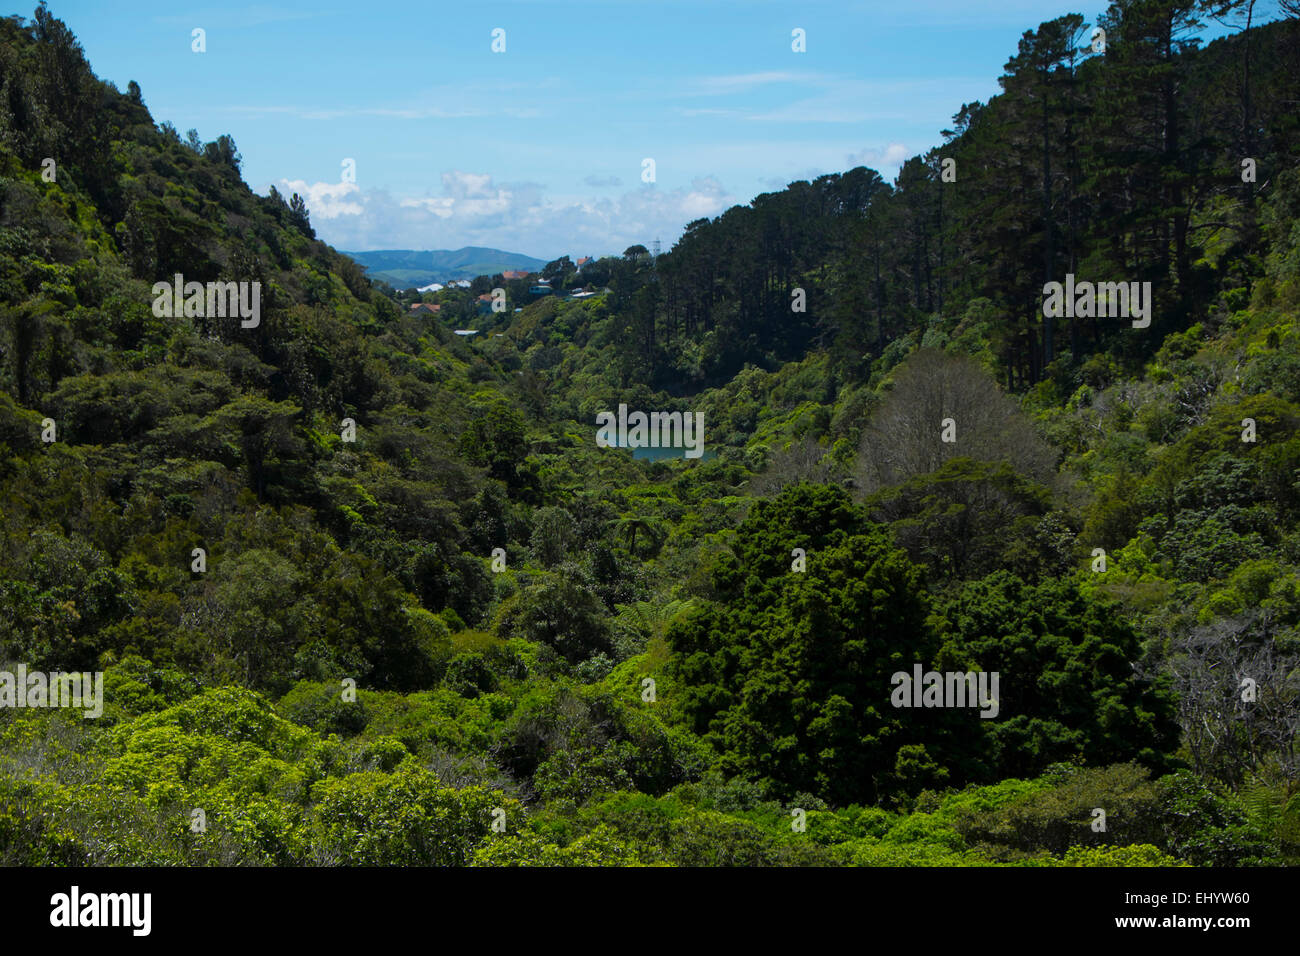 Jardins botaniques de Zealandia, Wellington, Île du Nord, Nouvelle-Zélande Banque D'Images